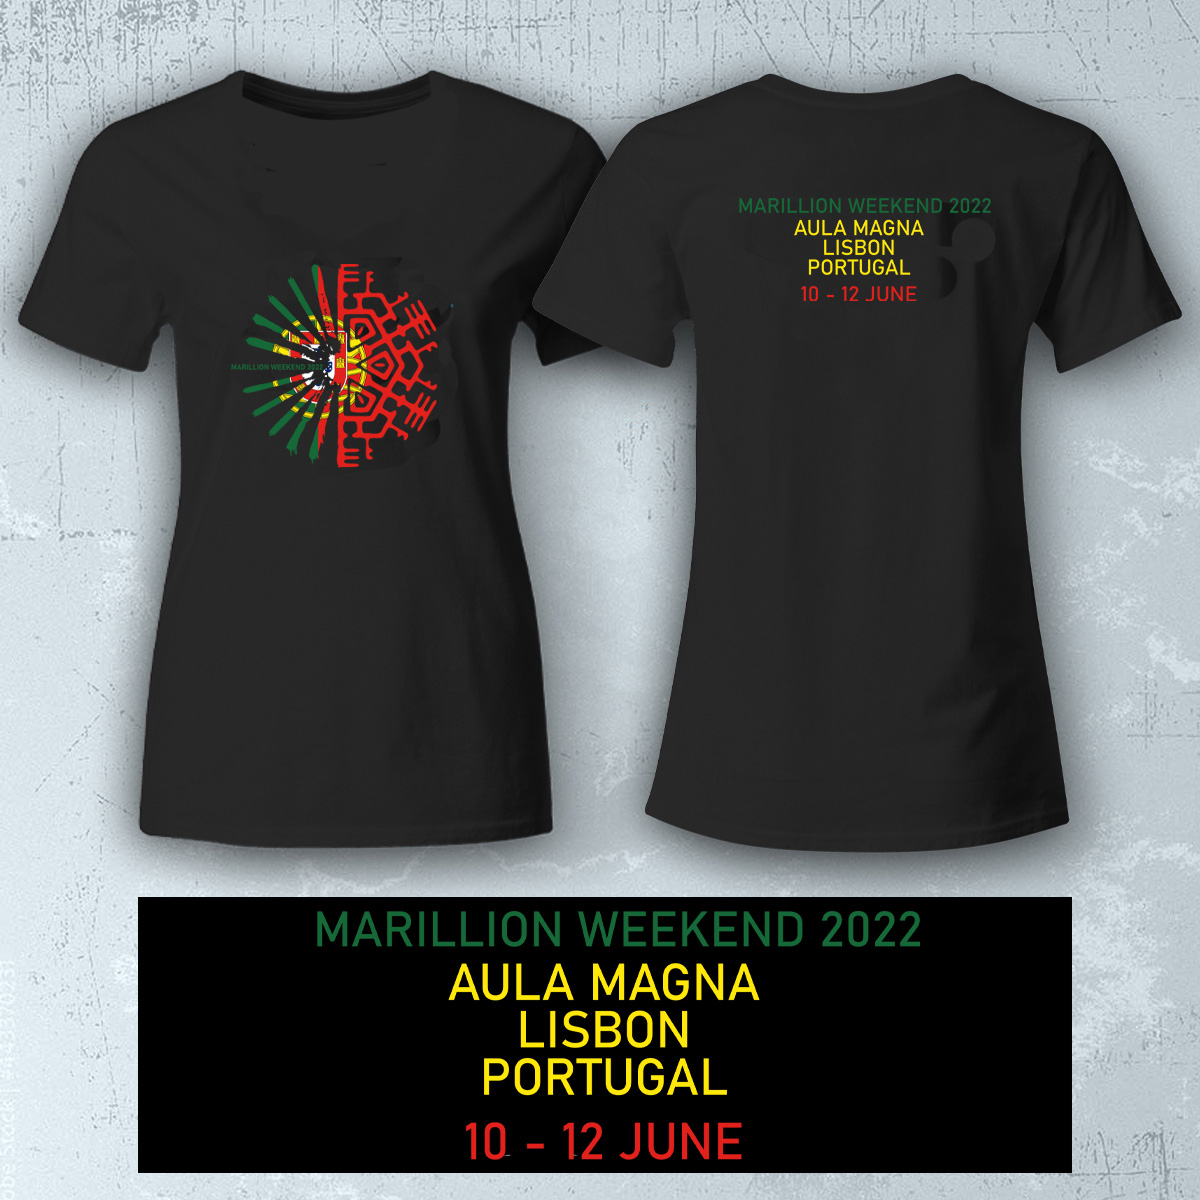 MW 2022 - Portugal Shirts Ladies Ladies Black T-Shirt